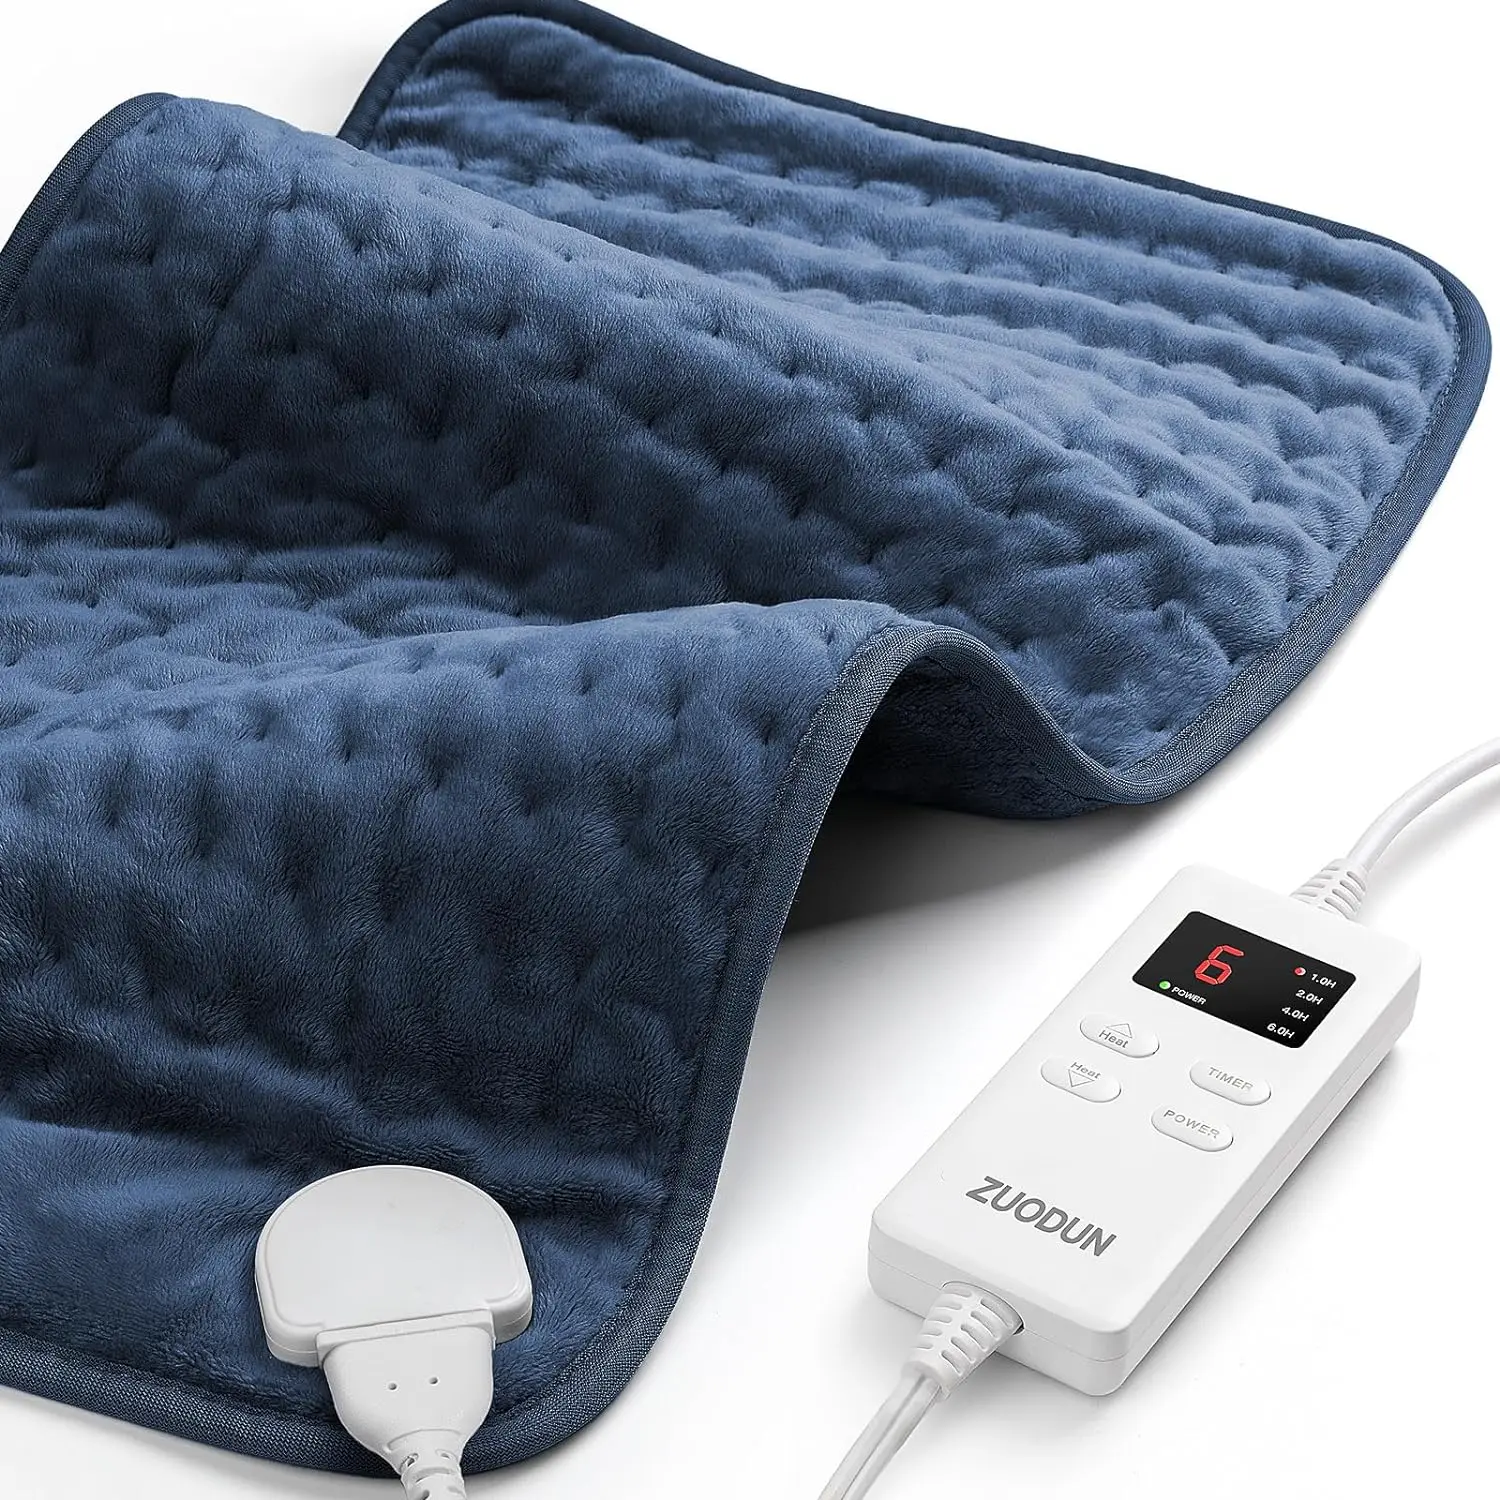 

Нагревательная подушка для облегчения боли в спине, ZUODUN электрические нагревательные колодки для судорог с автоматическим отключением и 6 уровнями нагрева, увлажняющая теплотерапия